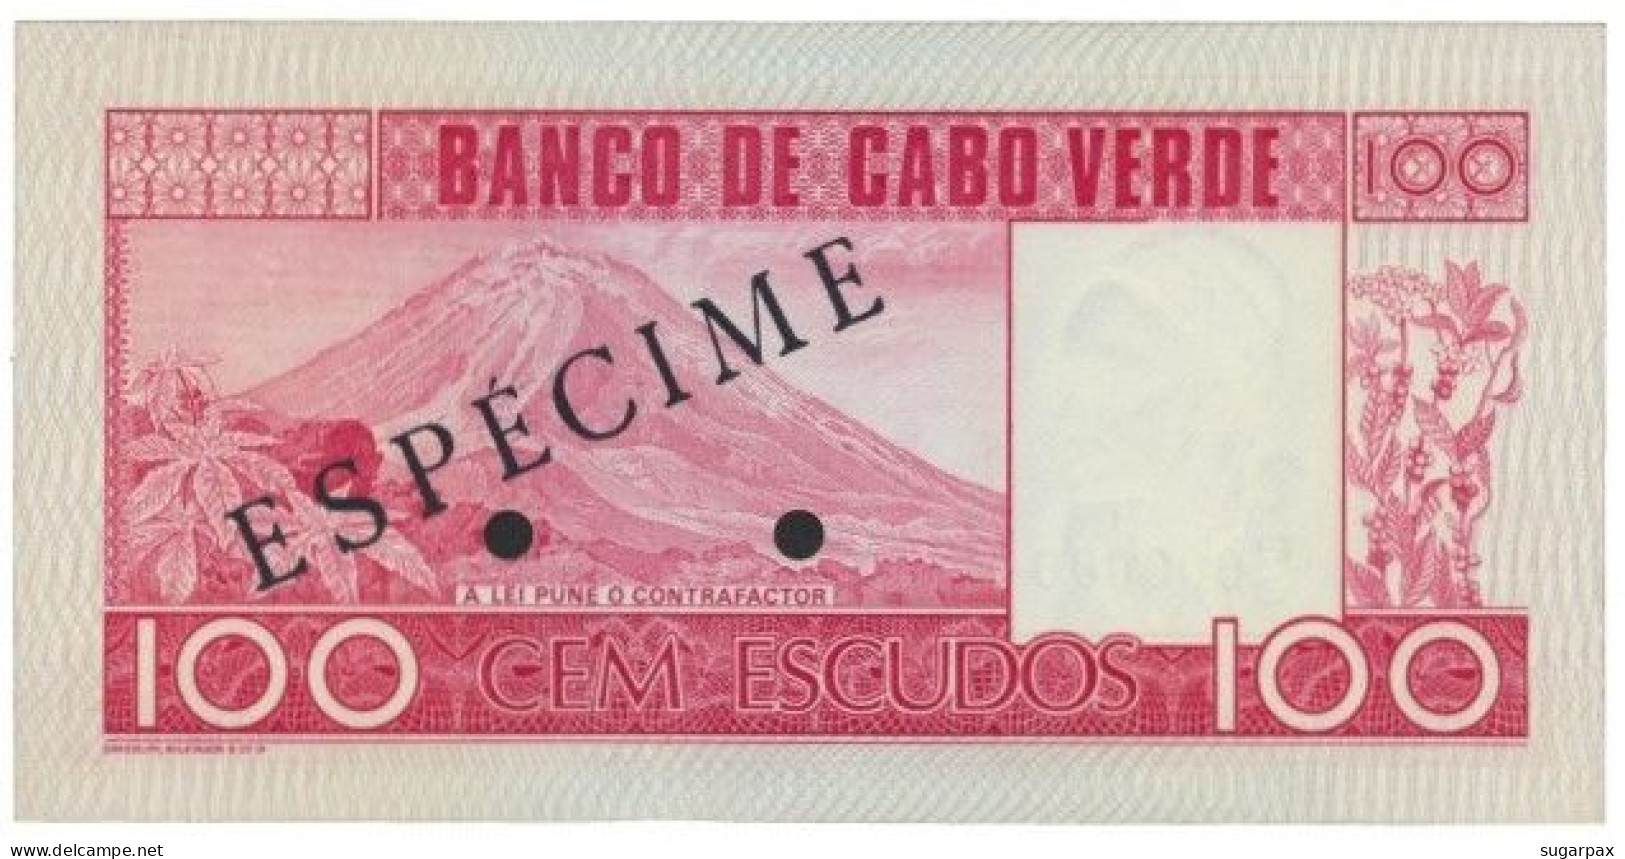 CAPE VERDE - 100 ESCUDOS - 20.01.1977 - Pick 54.s2 - Unc. - ESPÉCIME In BLACK - Cap Vert